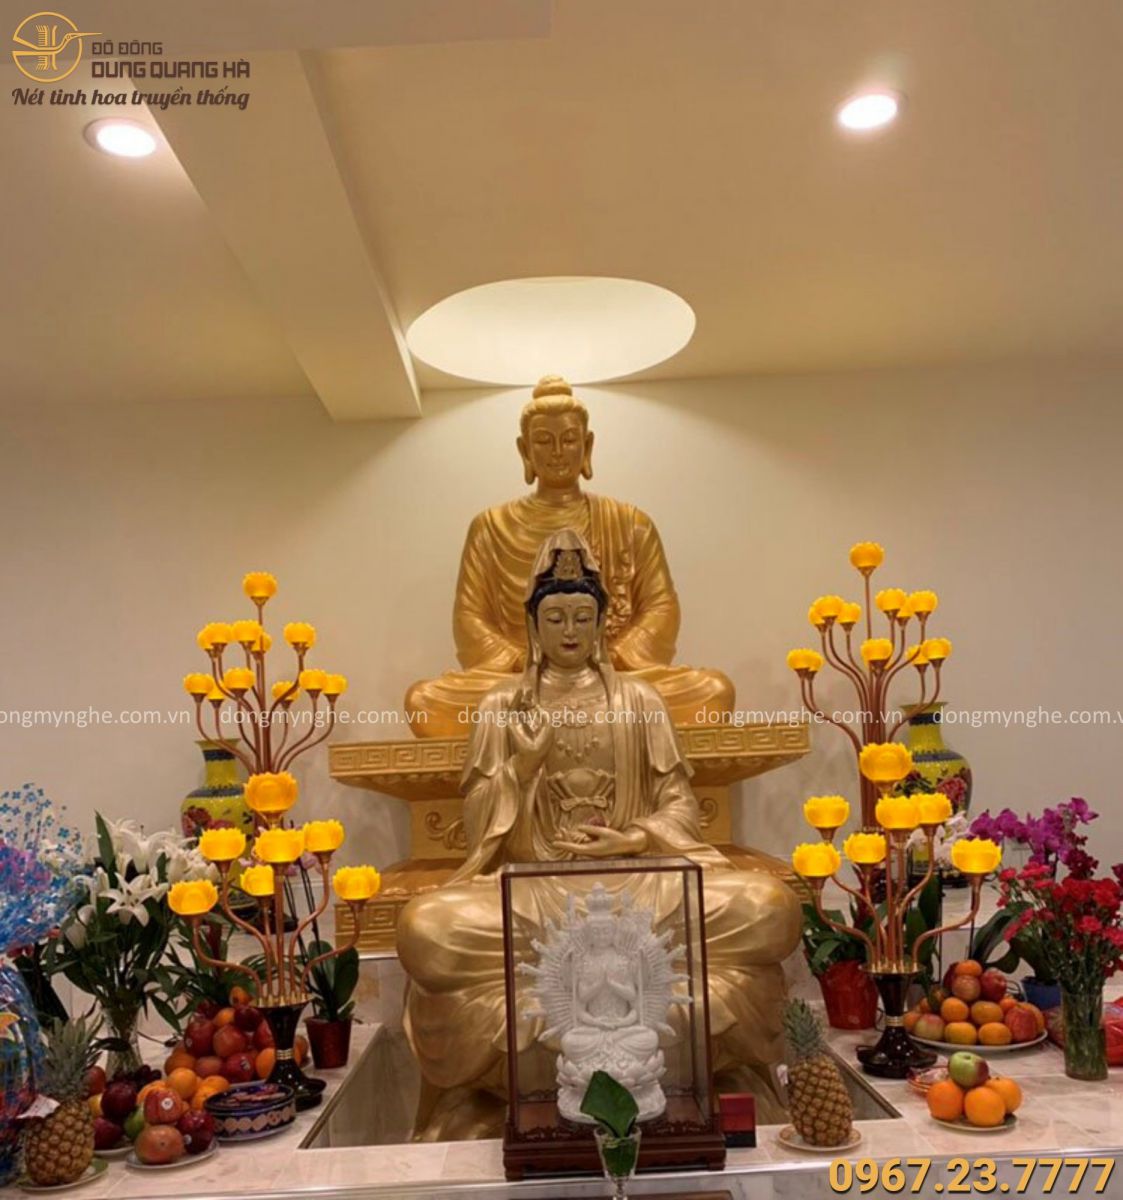 Lễ nghi Phật Quan Âm là ngày lễ được mong đợi nhất trong cộng đồng Phật giáo. Đây là dịp để tôn vinh và tôn kính sự hiển linh của Đức Bồ Tát, mong rằng sẽ được hưởng những phước lợi và miễn trừ những nỗi khổ đau trong cuộc sống. Hãy xem hình ảnh về lễ nghi Phật Quan Âm để hiểu thêm về tôn giáo và tâm linh của dân tộc Việt Nam.